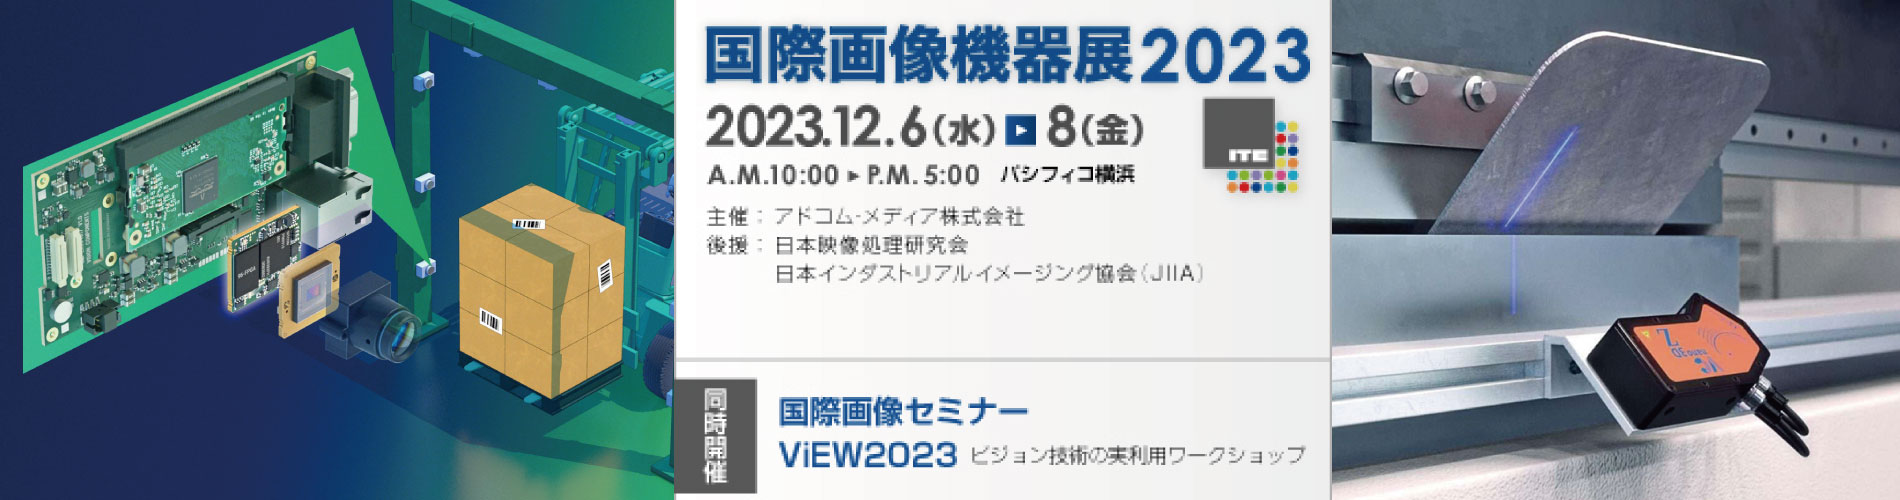 国際画像機器展2023